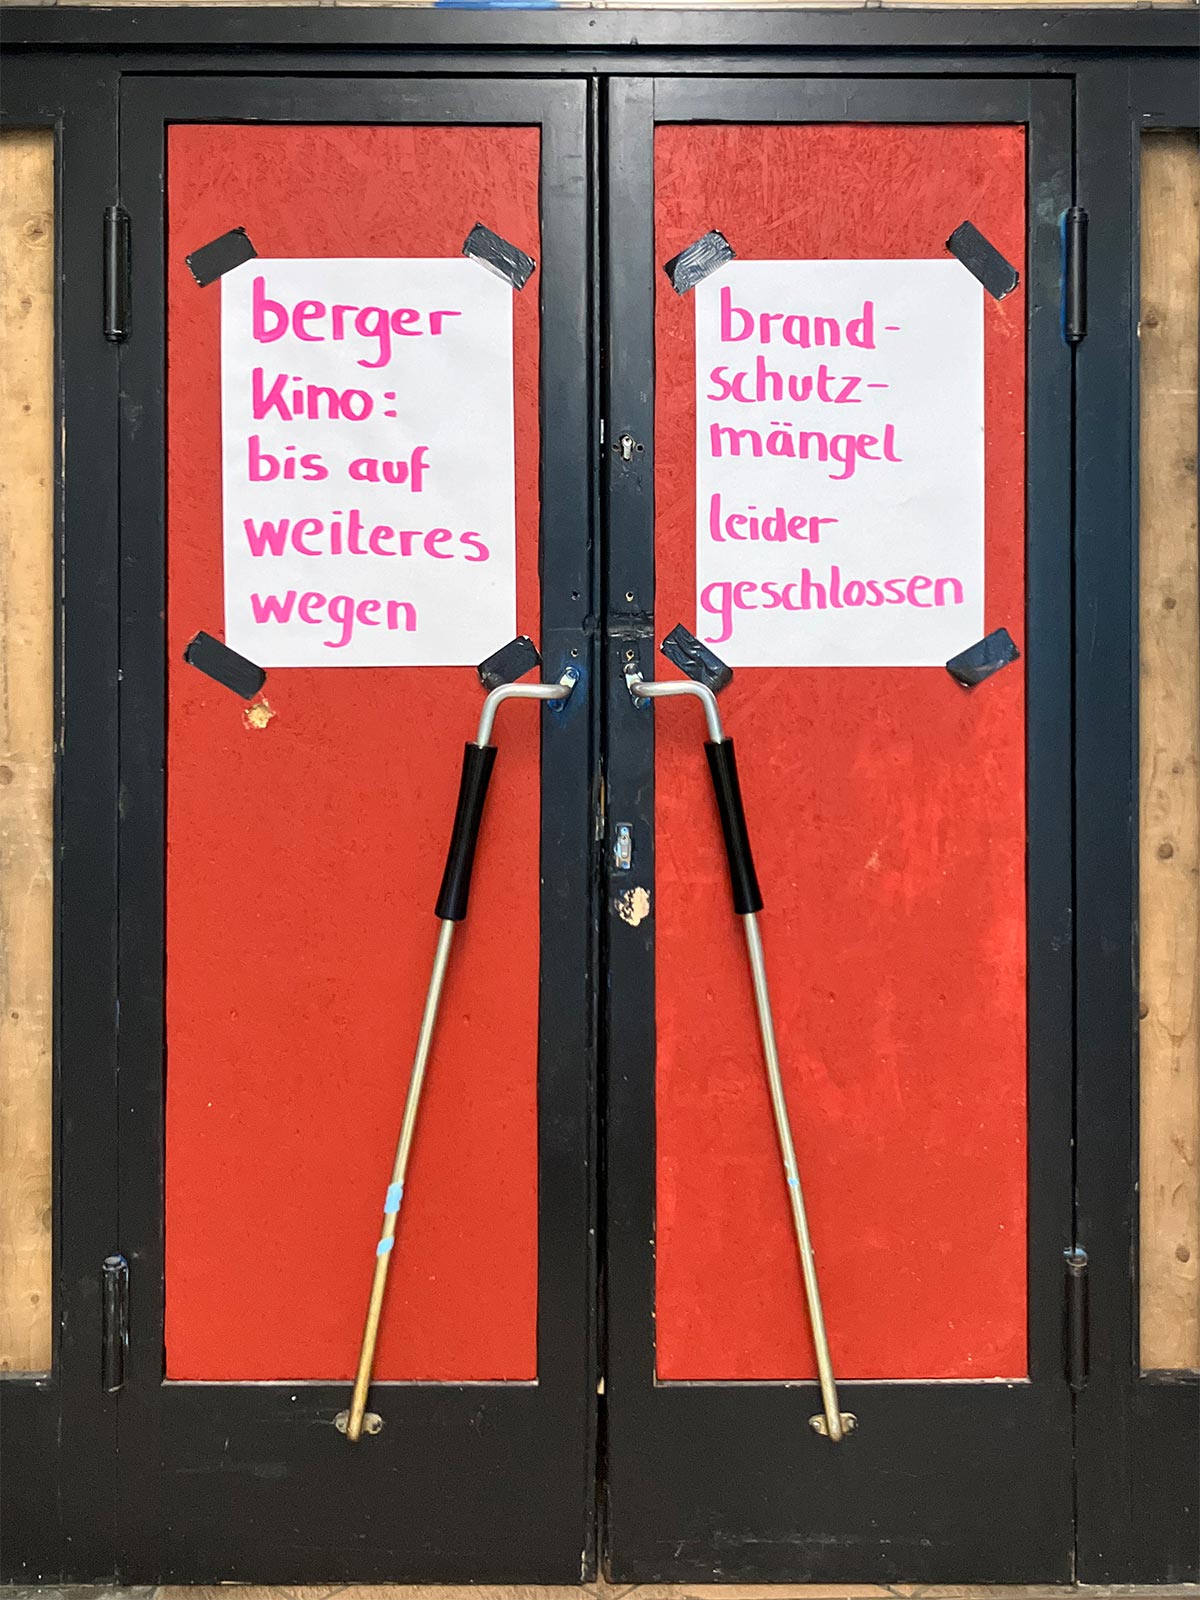 Berger Kino wegen Brandschutzmangel geschlossen